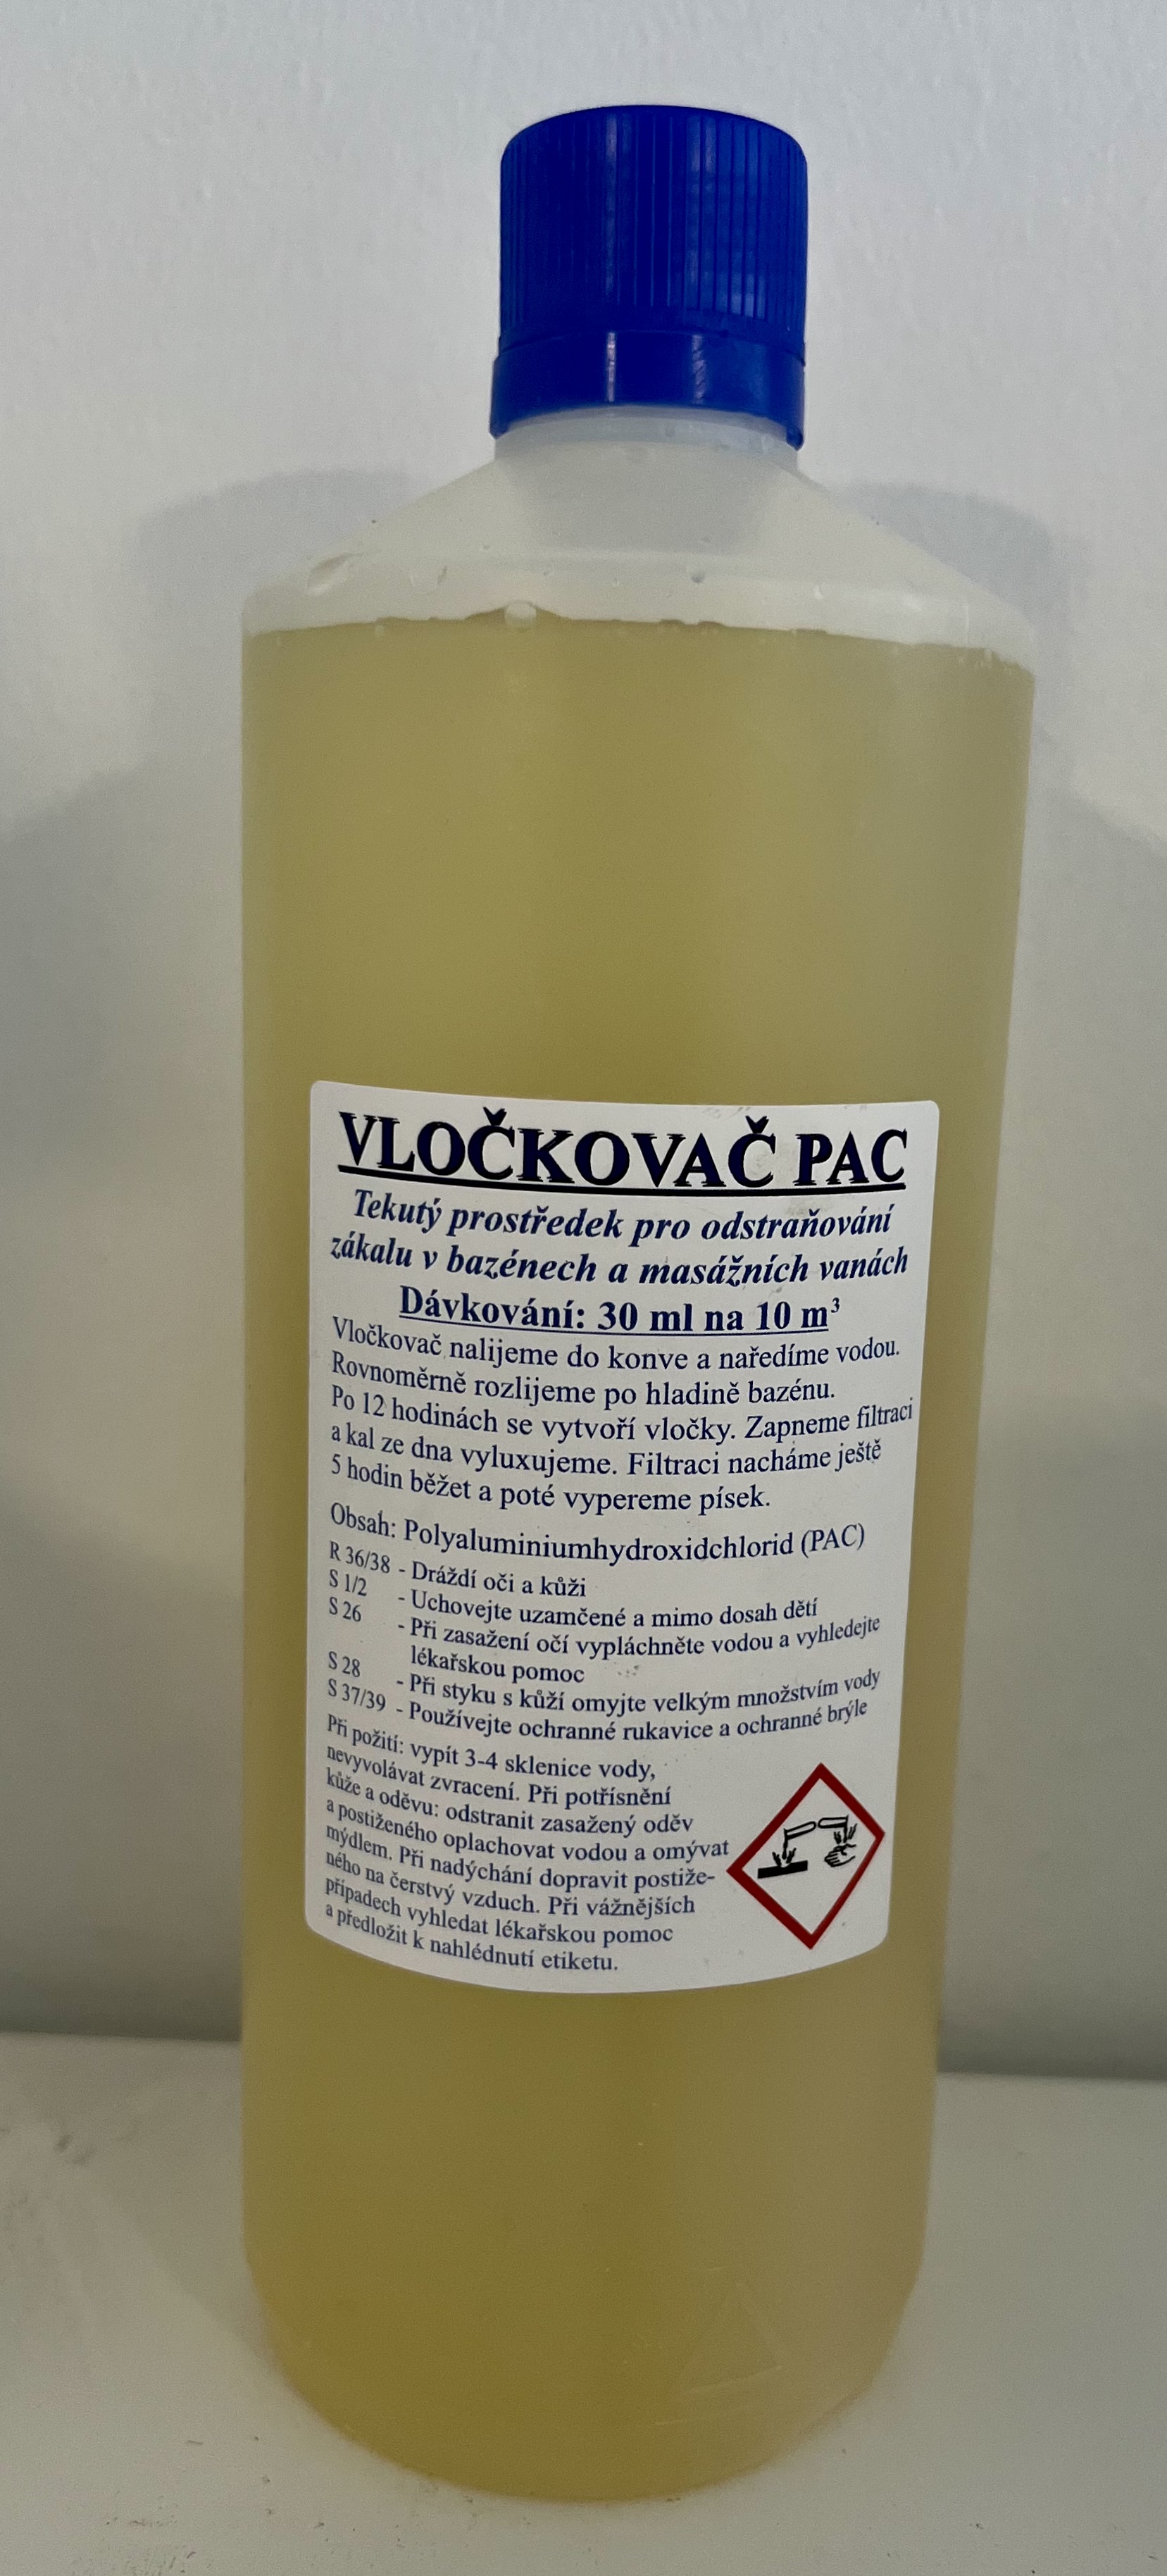 Poolservis Vločkovač 1l (Floccer - Flokul) - projasnění vody v bazénu